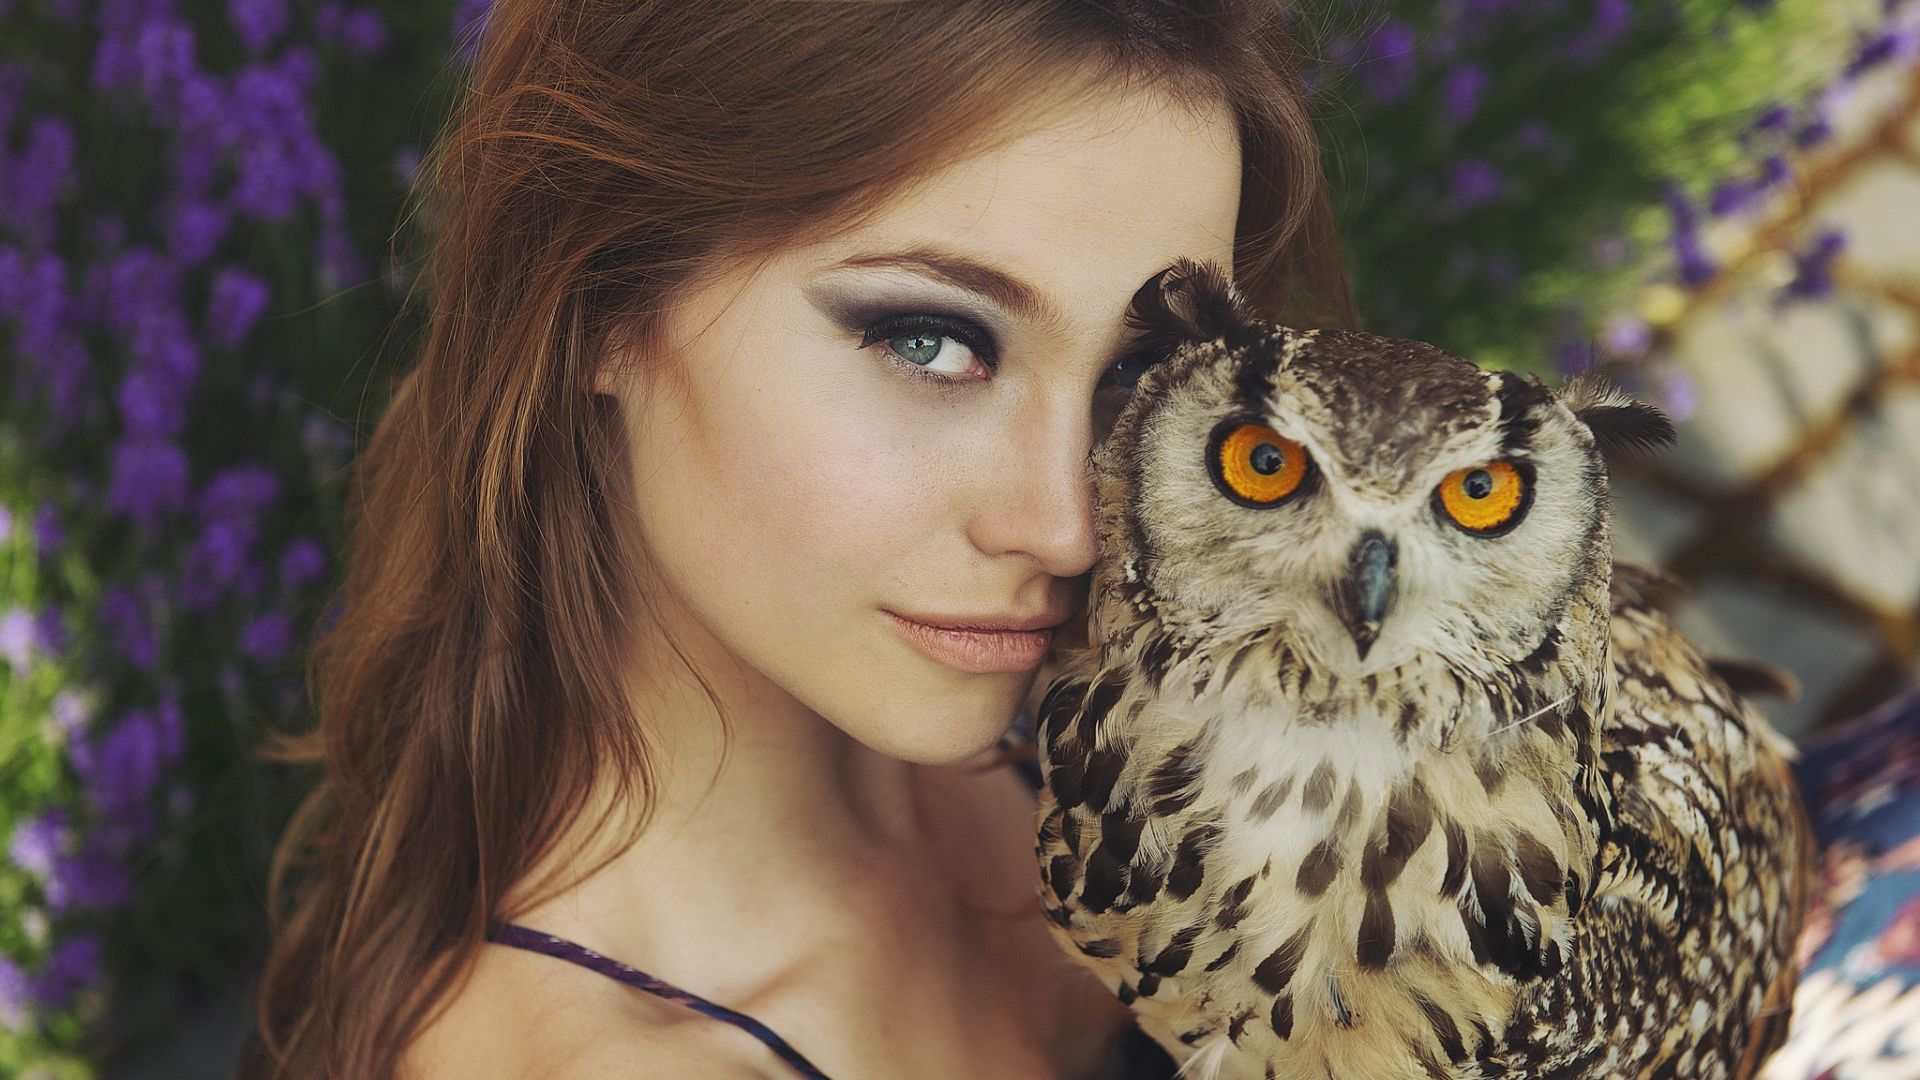 Wallpaper Brunette girl with owl bird